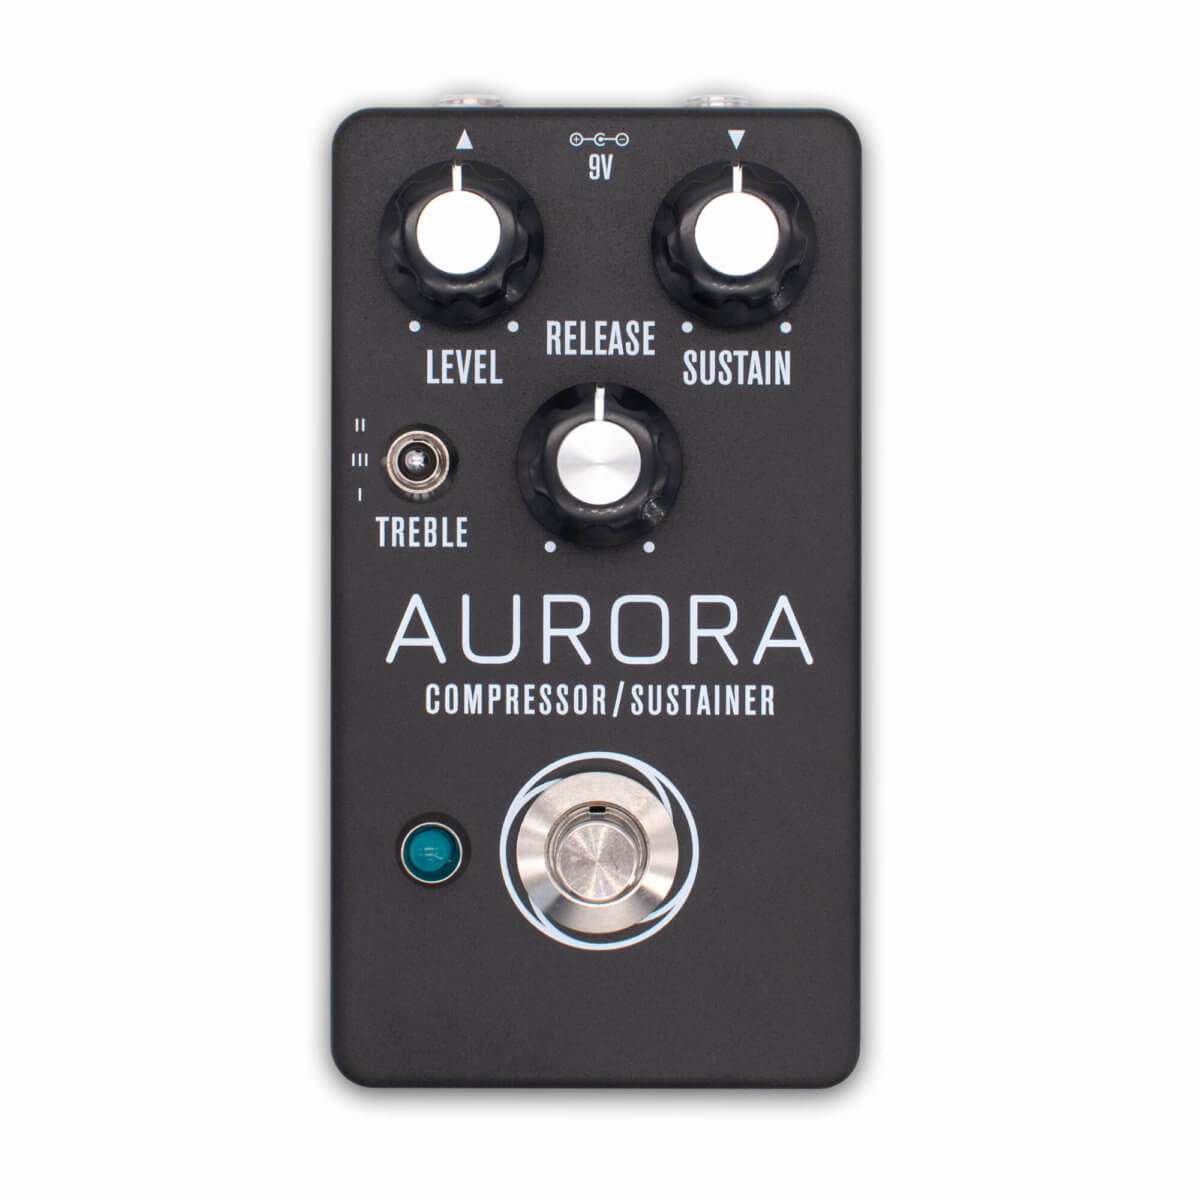 Aurora Compressor / Sustainer - Aion FX